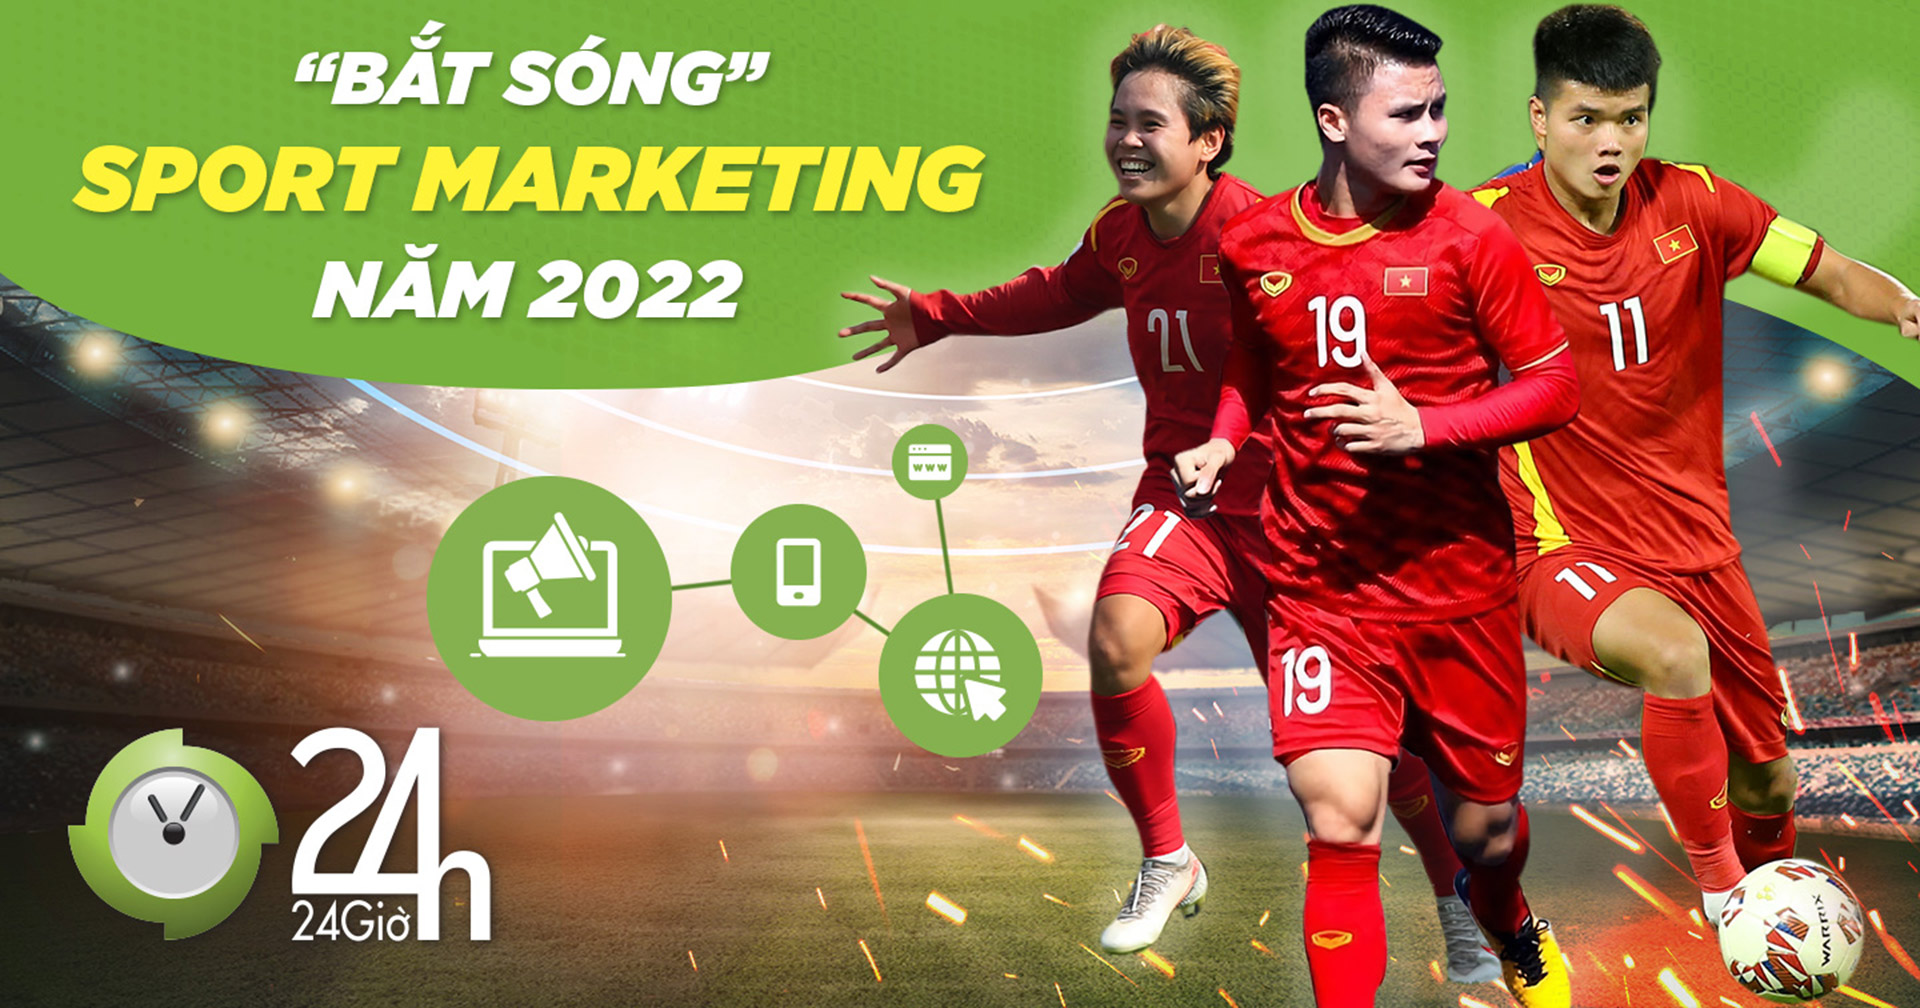 “Bắt sóng” xu hướng Sport Marketing cùng các giải đấu siêu hot để bứt phá năm 2022 - 1